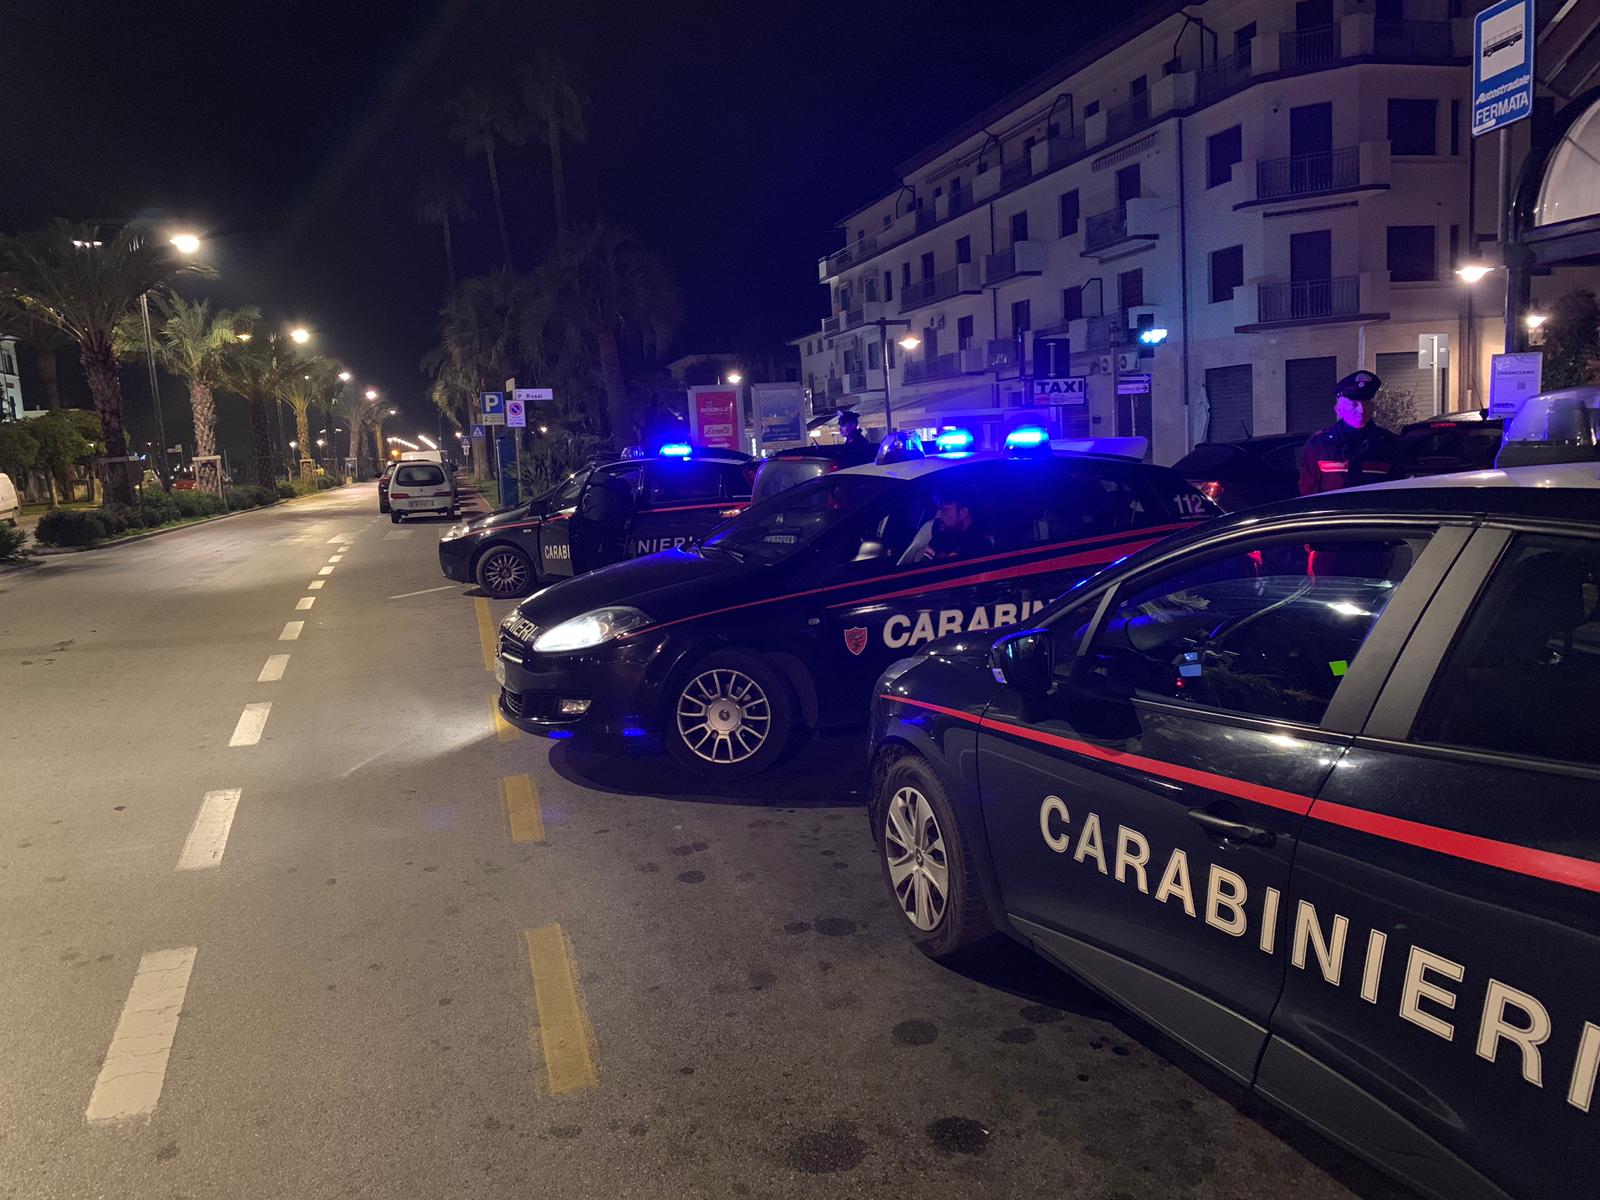 Ruba al tabacchi e aggredisce i carabinieri, arrestato